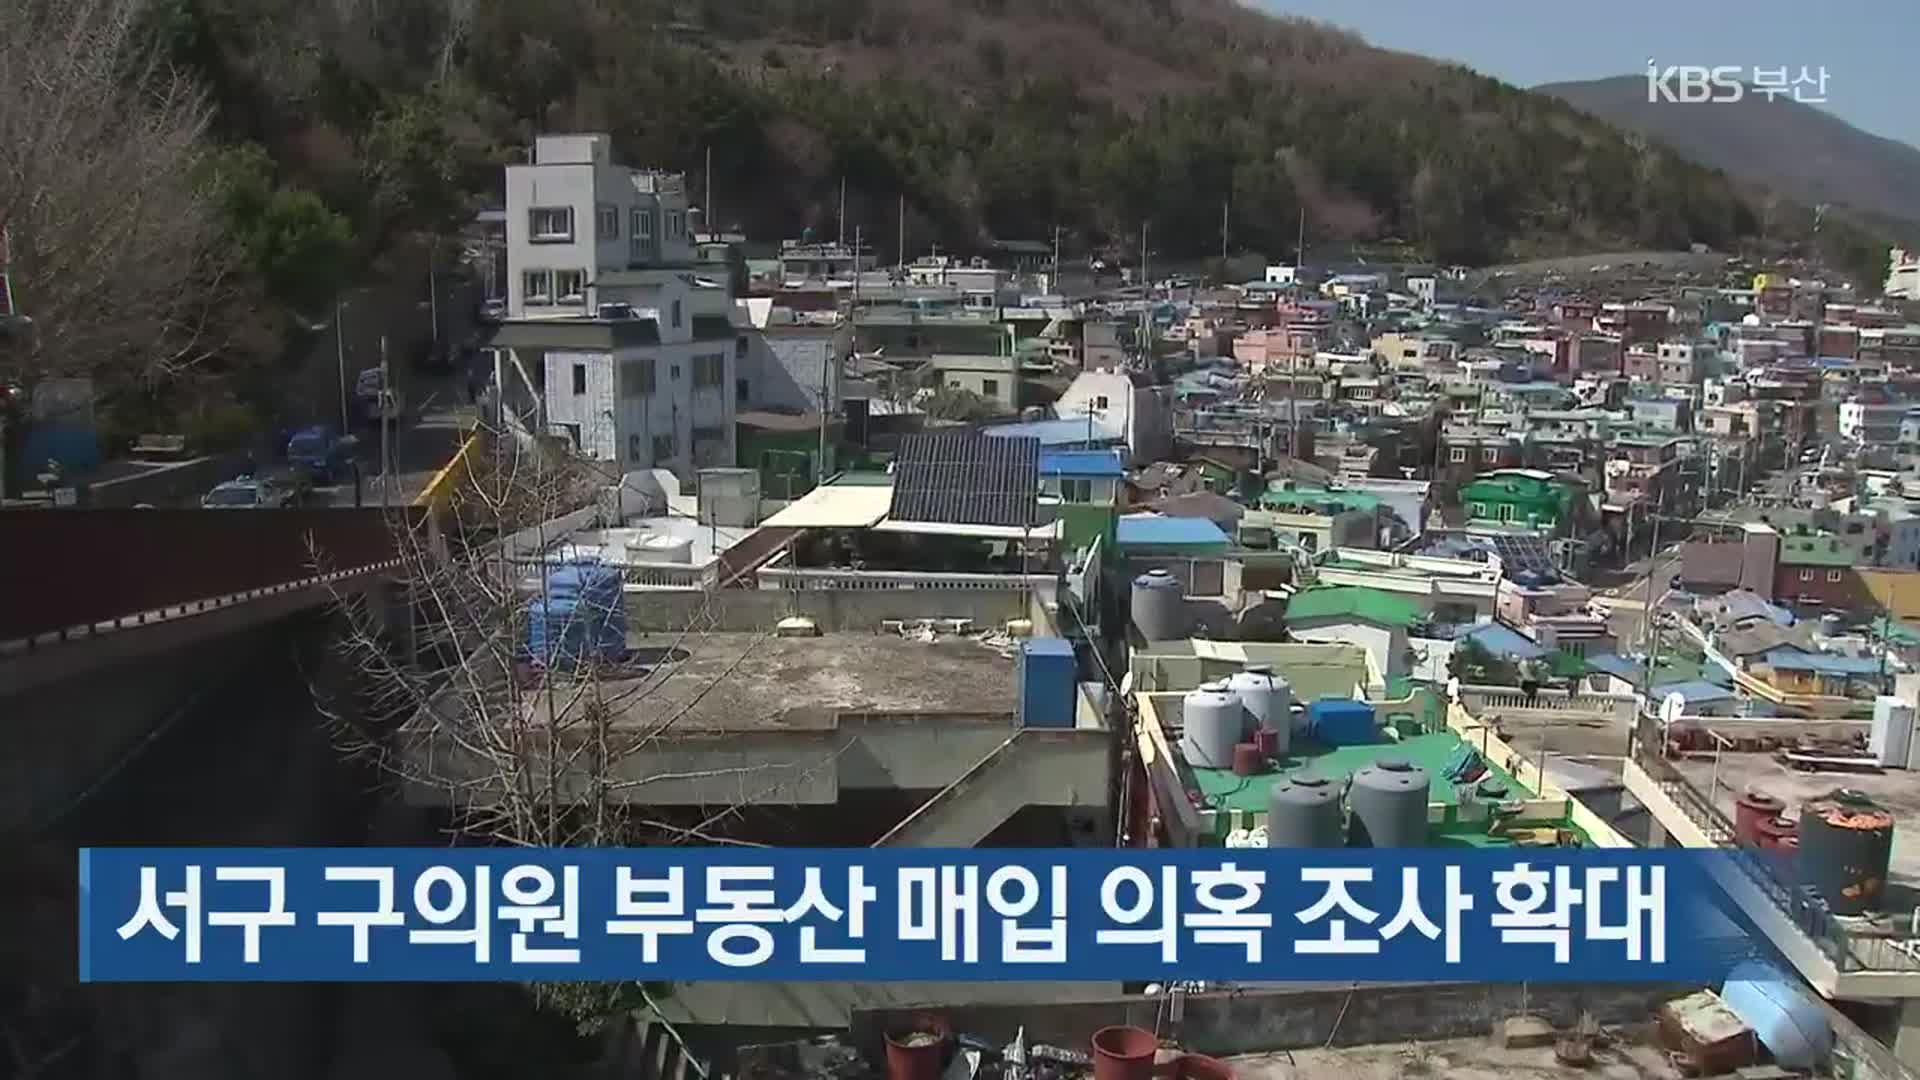 부산 서구 구의원 부동산 매입 의혹 조사 확대